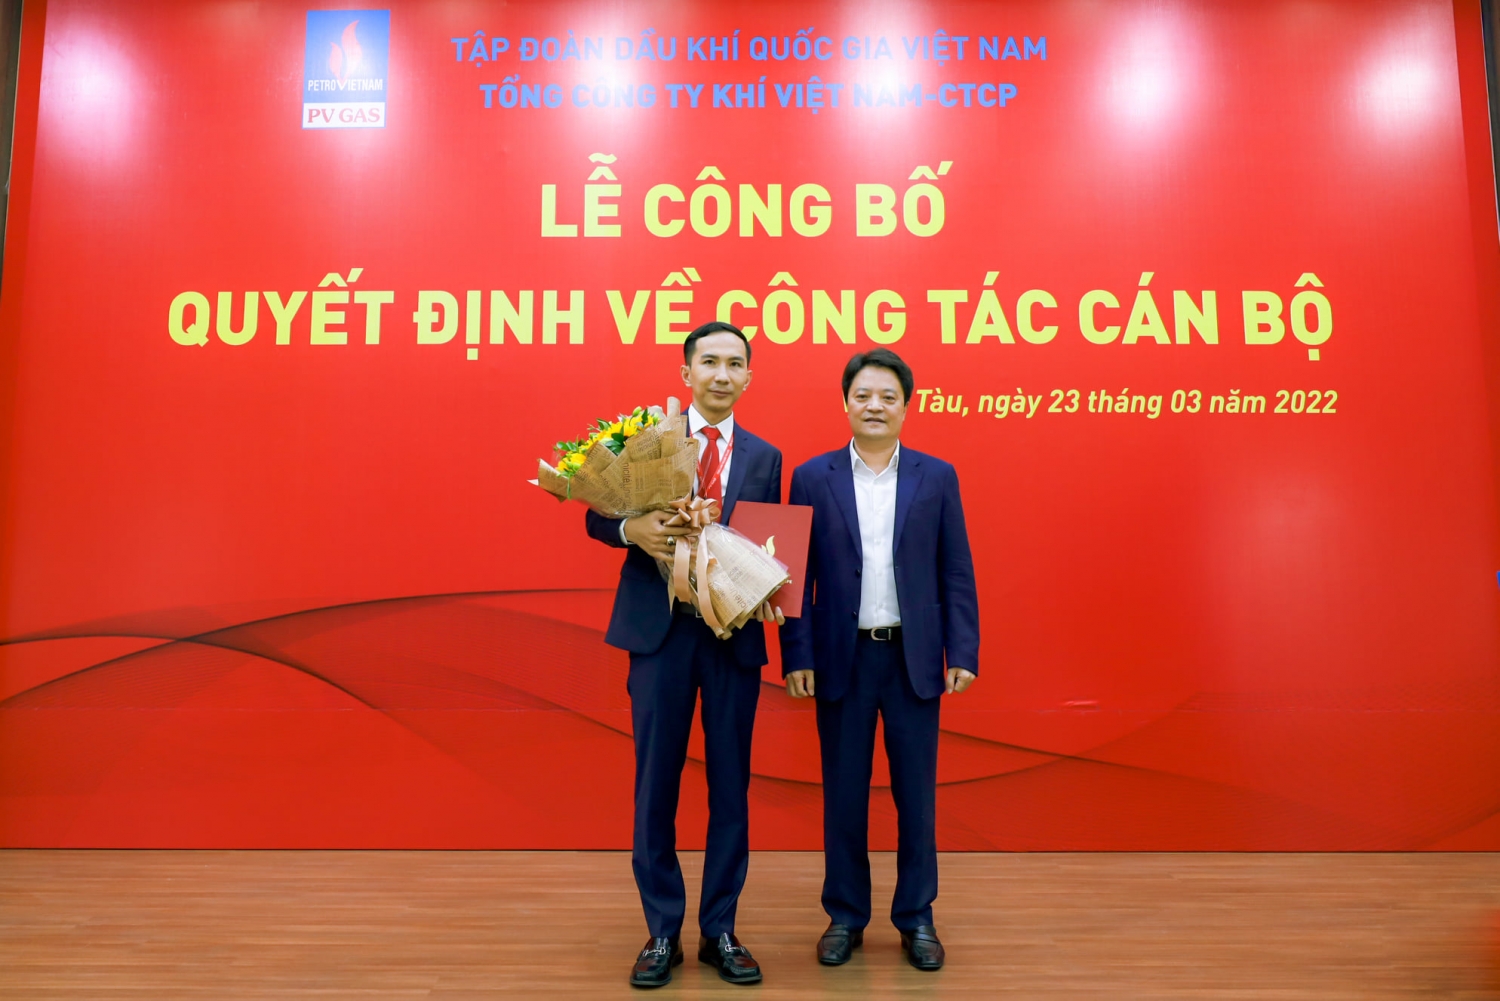 đồng chí Hoàng Văn Quang - Tổng giám đốc PV GAS